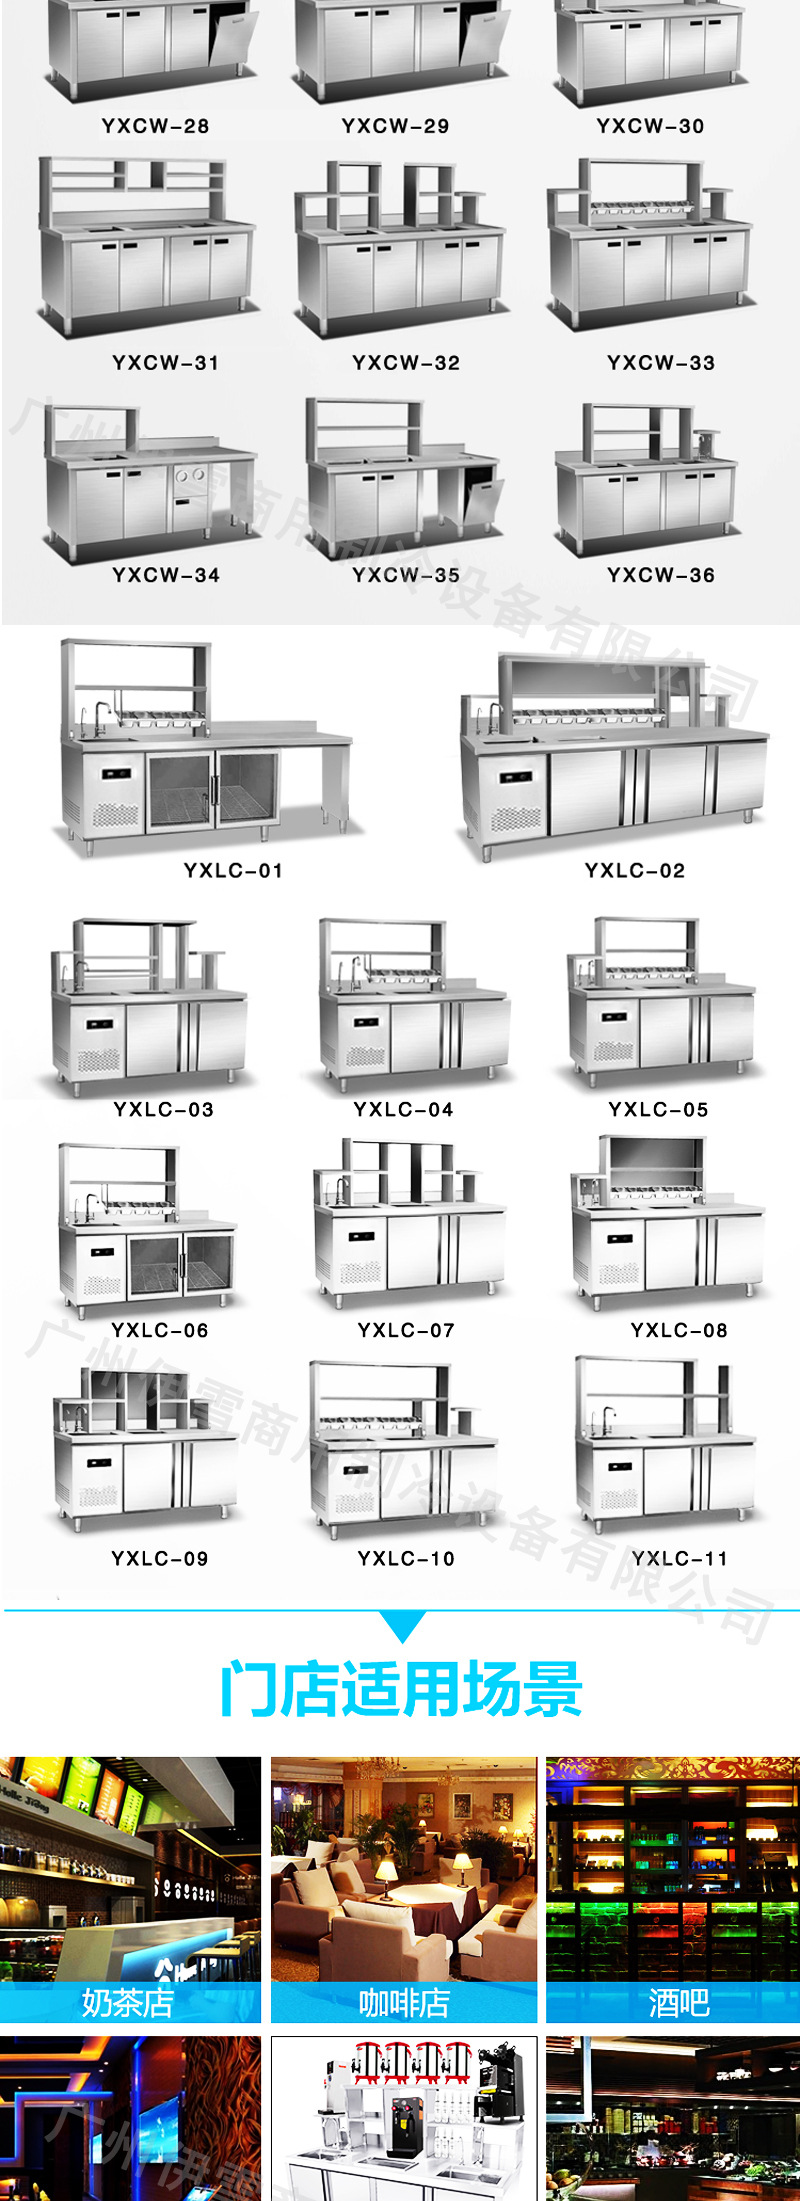 商用不锈钢水吧台 非标操作台 可定做制冷柜或者常温柜 厂家直销示例图5